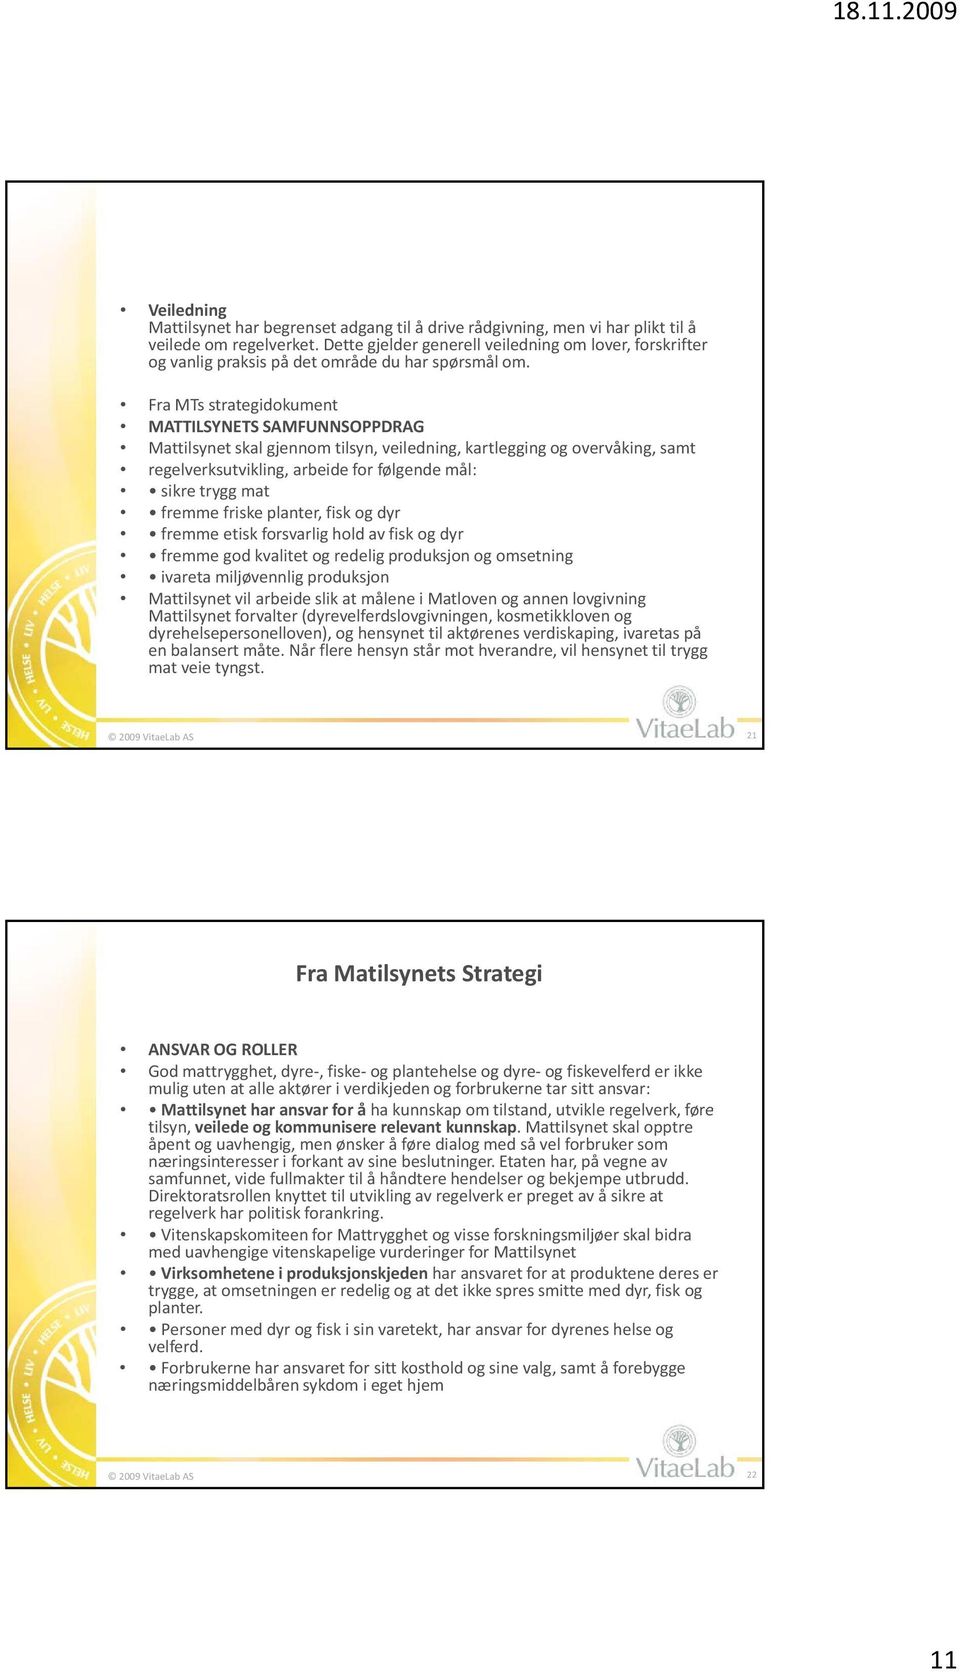 Fra MTs strategidokument MATTILSYNETS SAMFUNNSOPPDRAG Mattilsynet skal gjennom tilsyn, veiledning, kartlegging og overvåking, samt regelverksutvikling, arbeide for følgende mål: sikre trygg mat